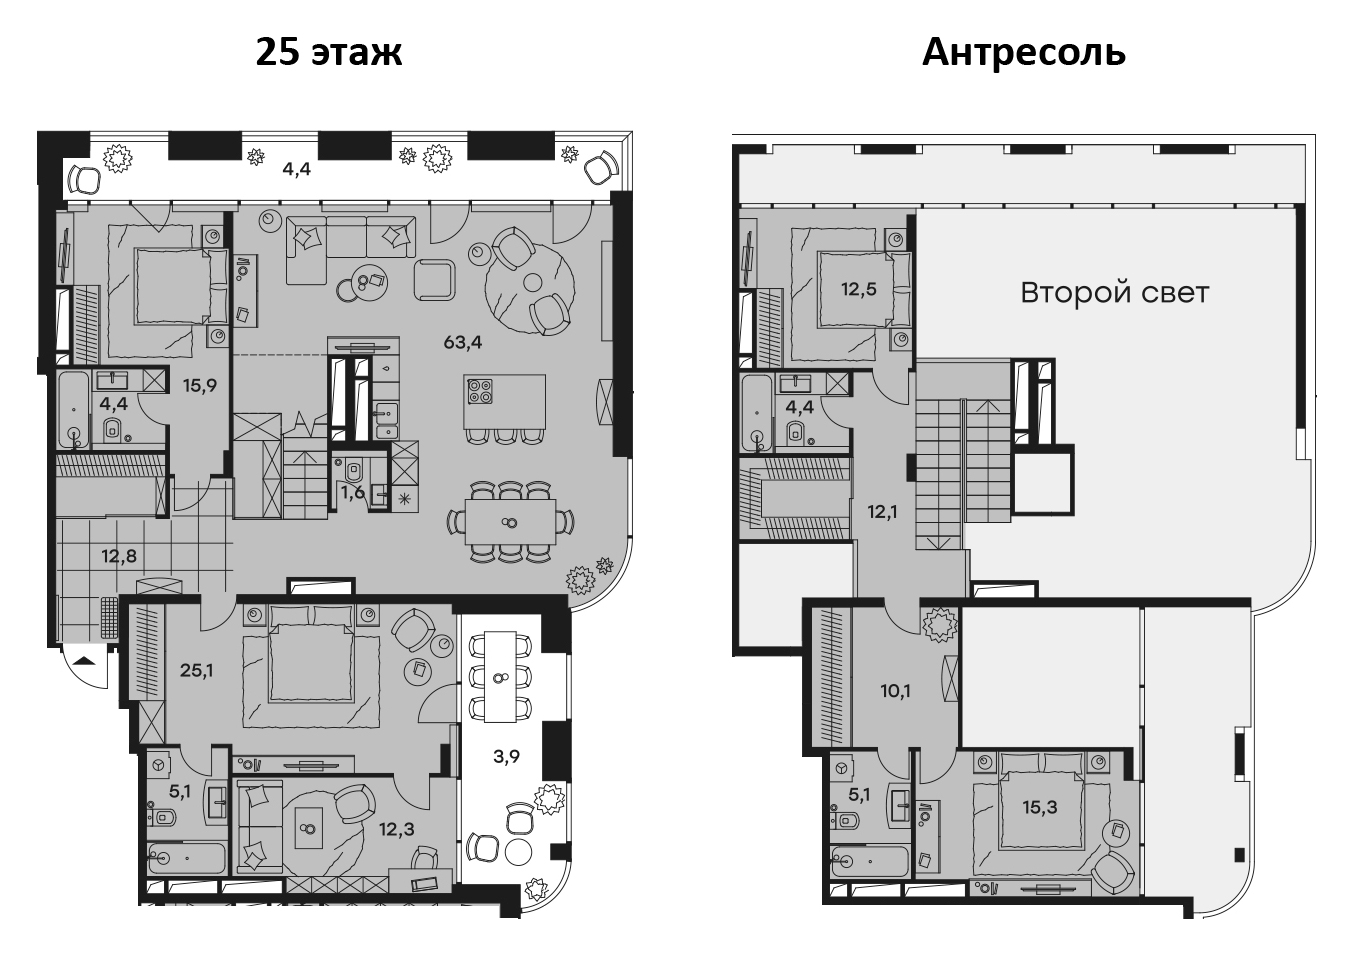 5-комнатная, 208.9 м²– 2